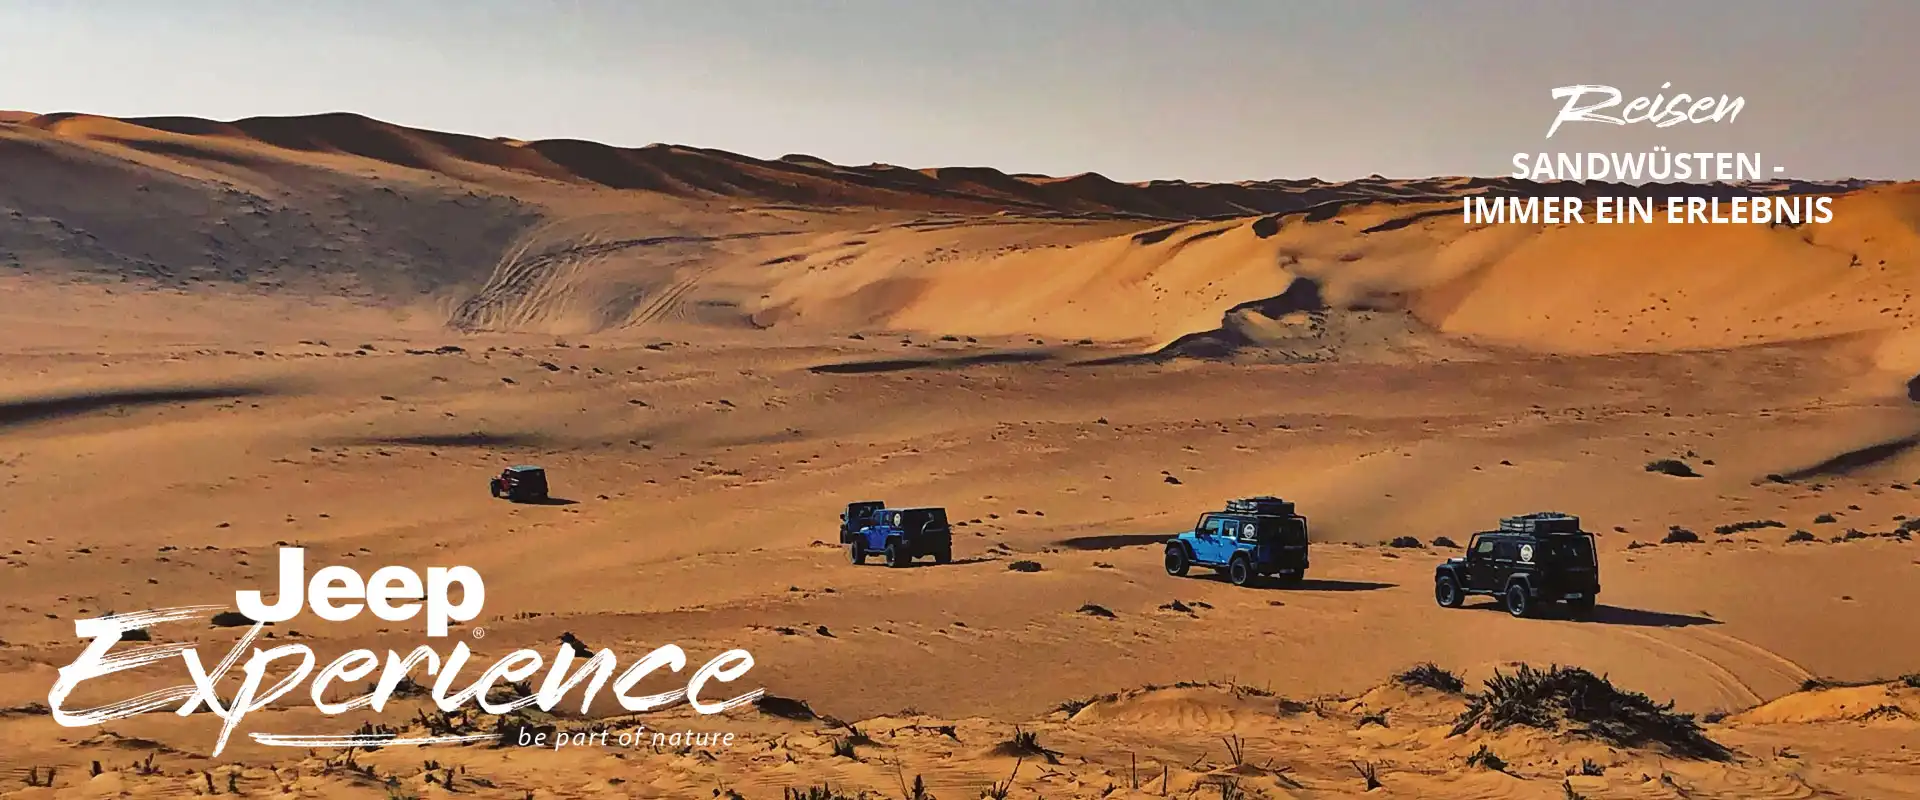 Offroad Tour mit dem Geländewagen durch die Wüste